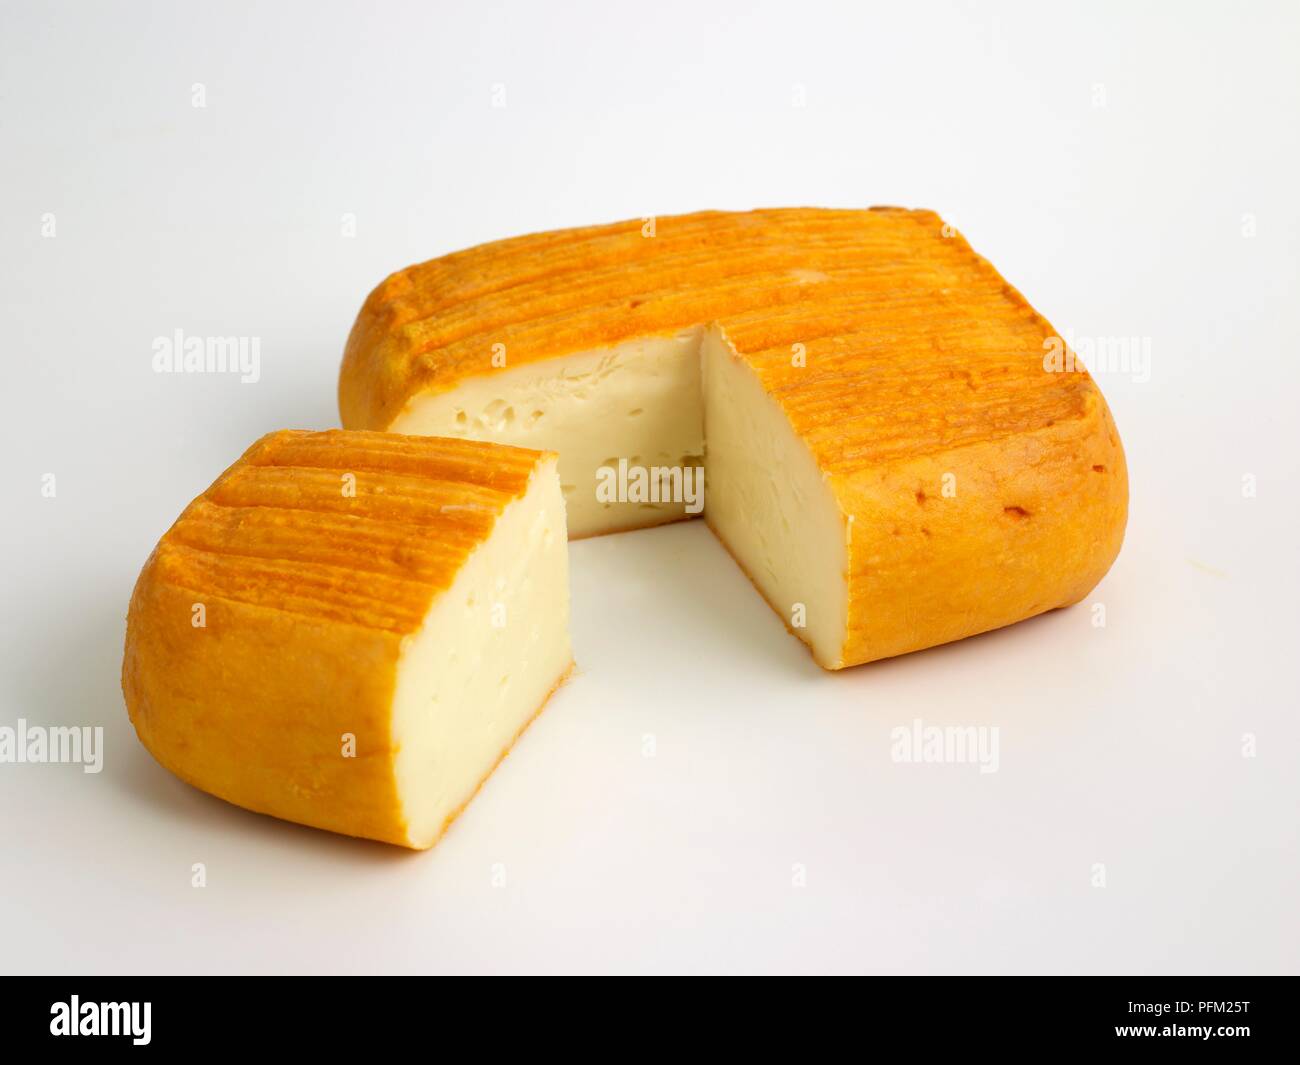 Meubles de place de l'anglais Vieux-Boulogne fromage au lait de vache avec le zeste d'orange Banque D'Images